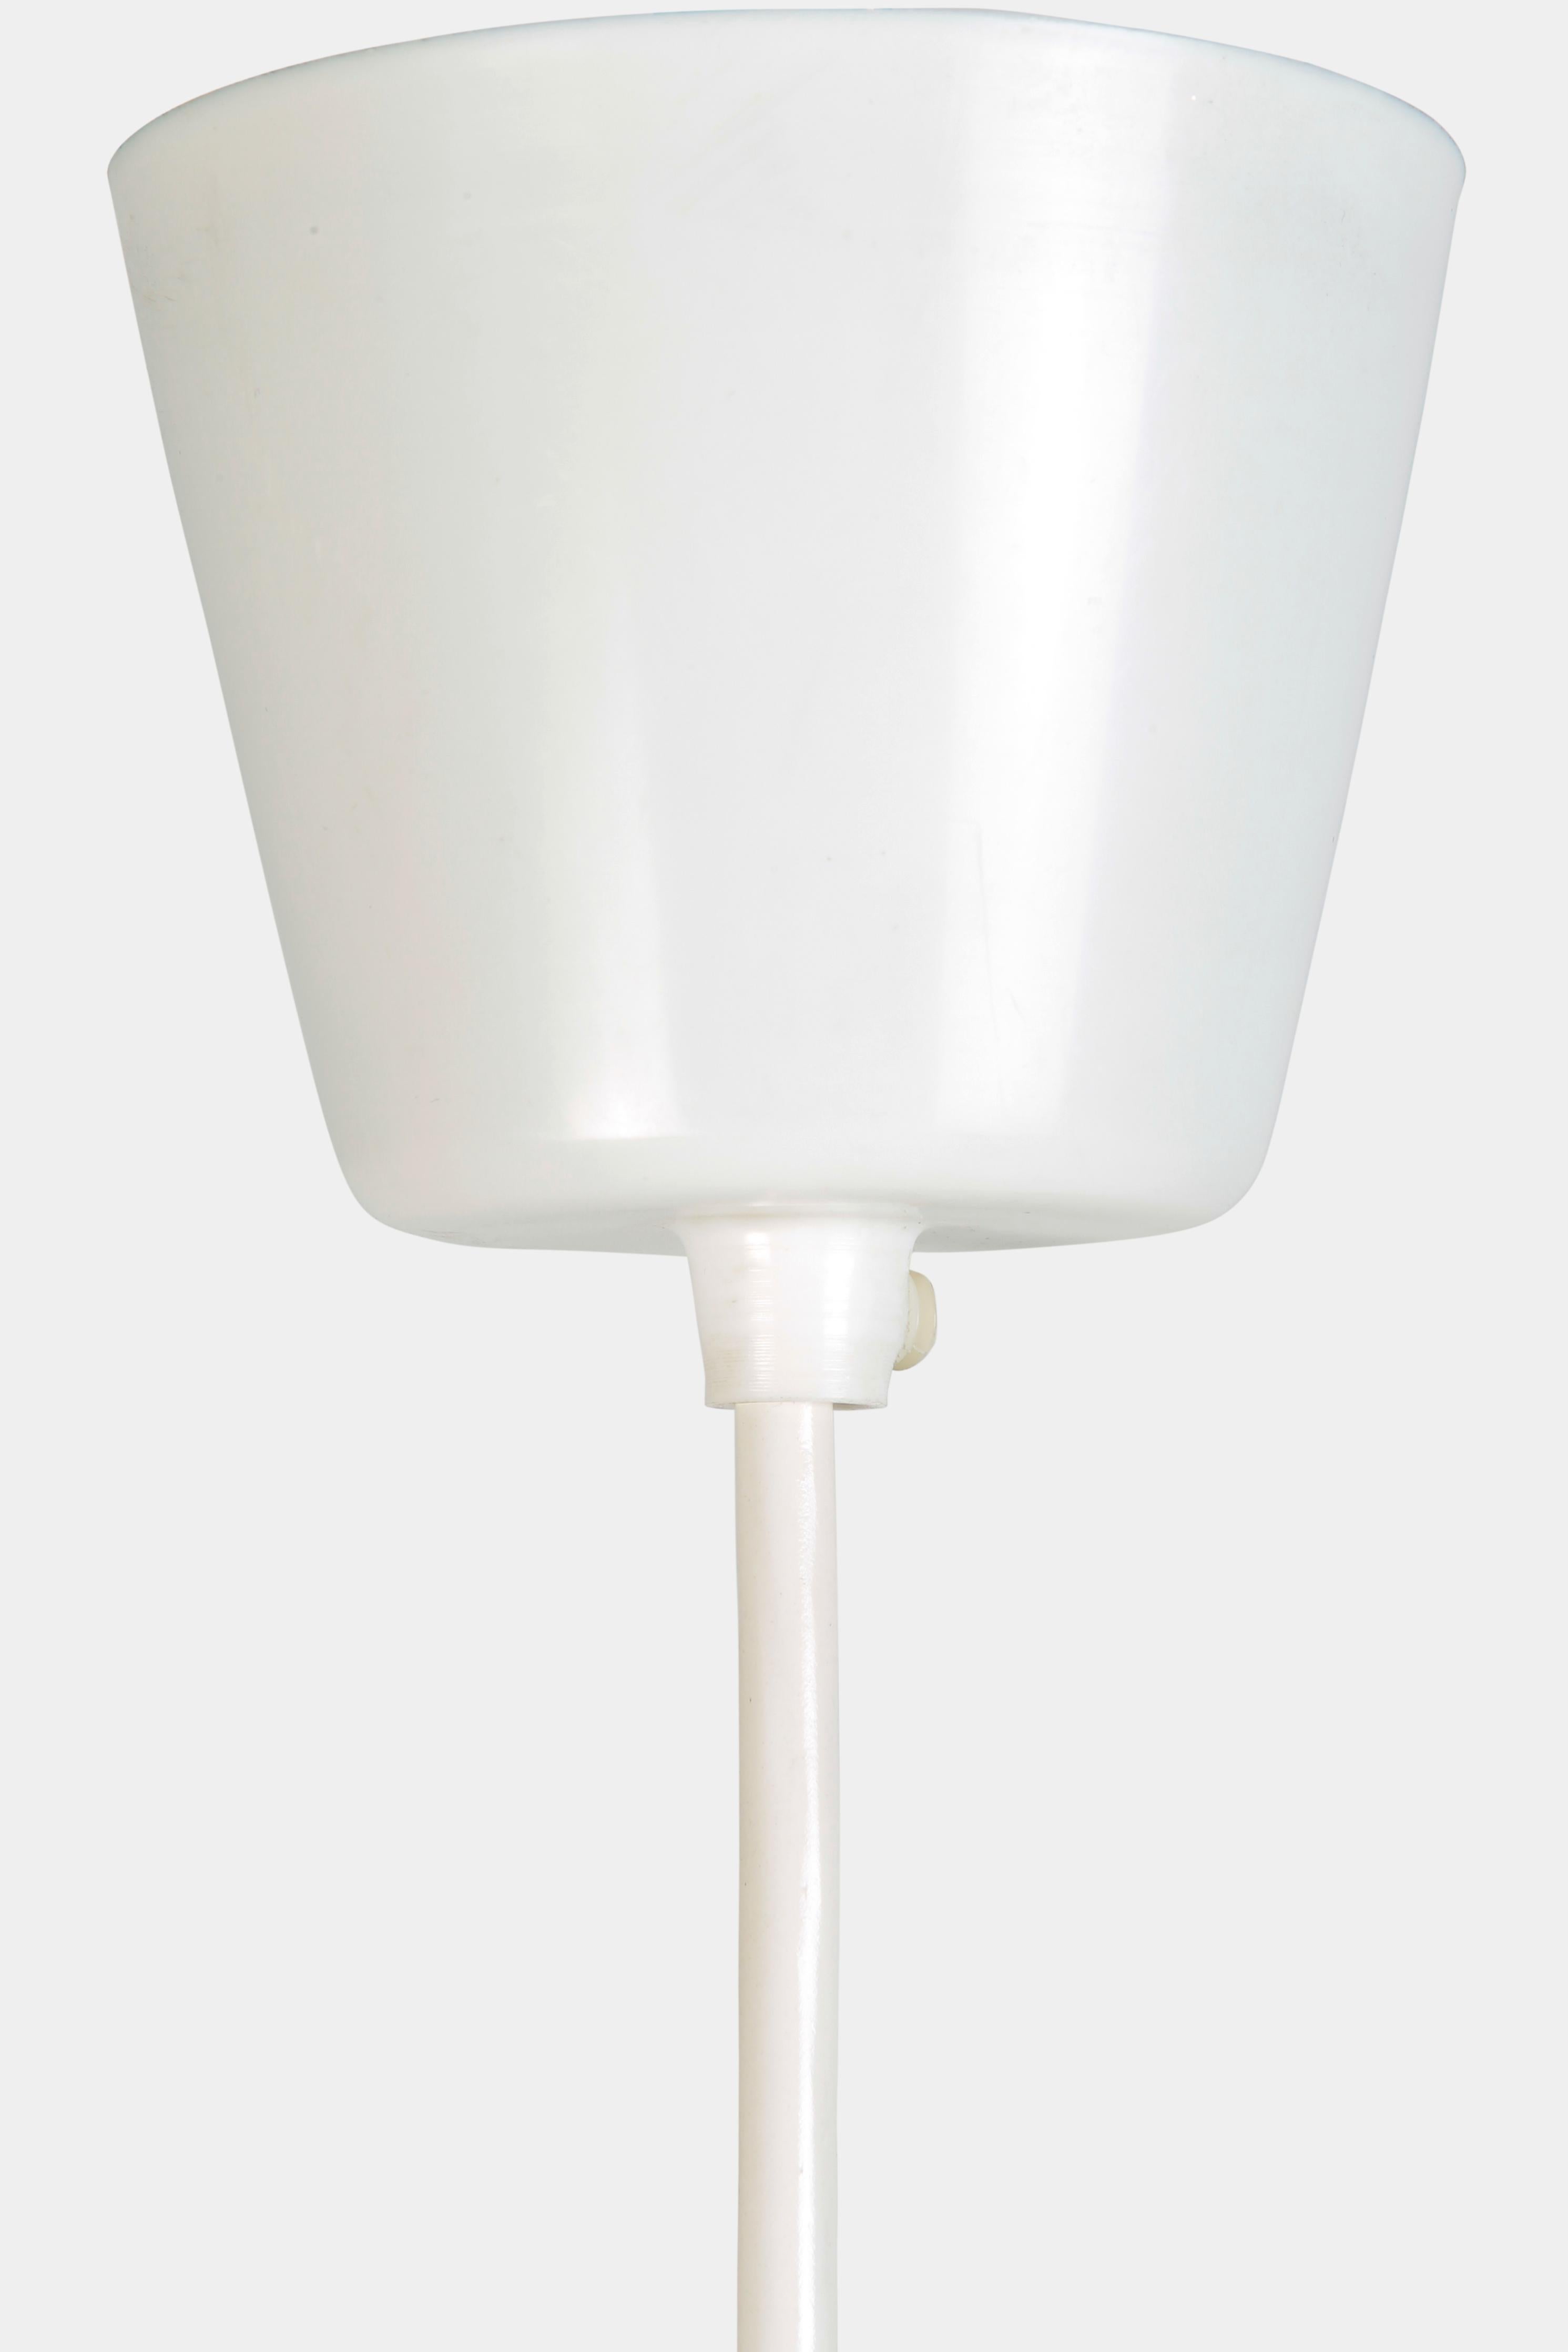 Verner Panton Fun 0DM Ceiling Lamp, 1960s 3